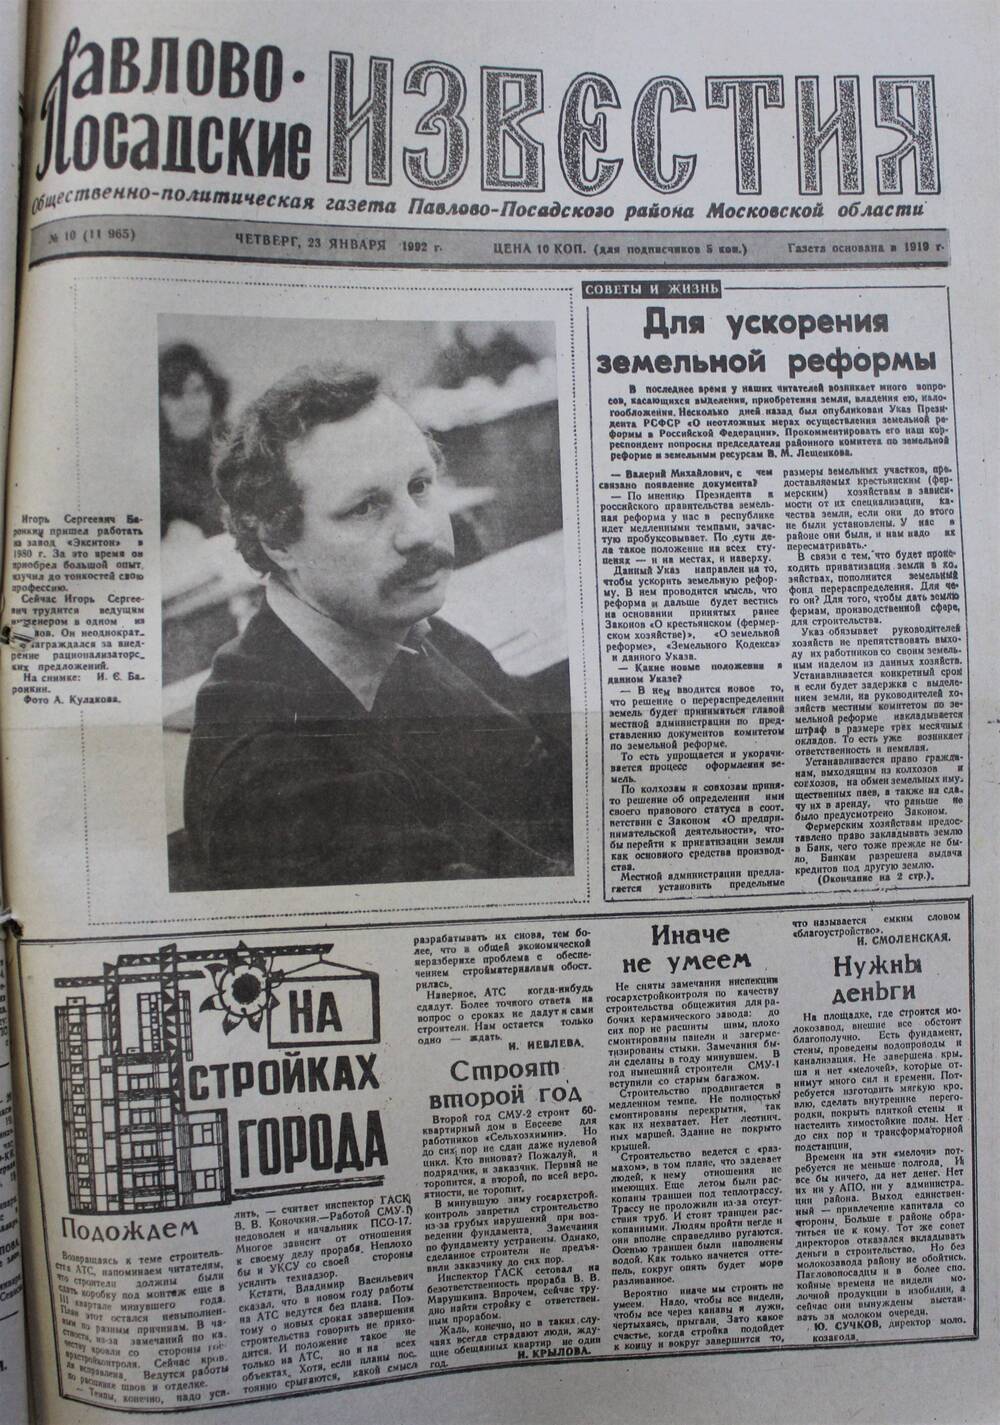 Газета Павлово-Посадские известия № 10 (11965)  от 23 января 1992 г.